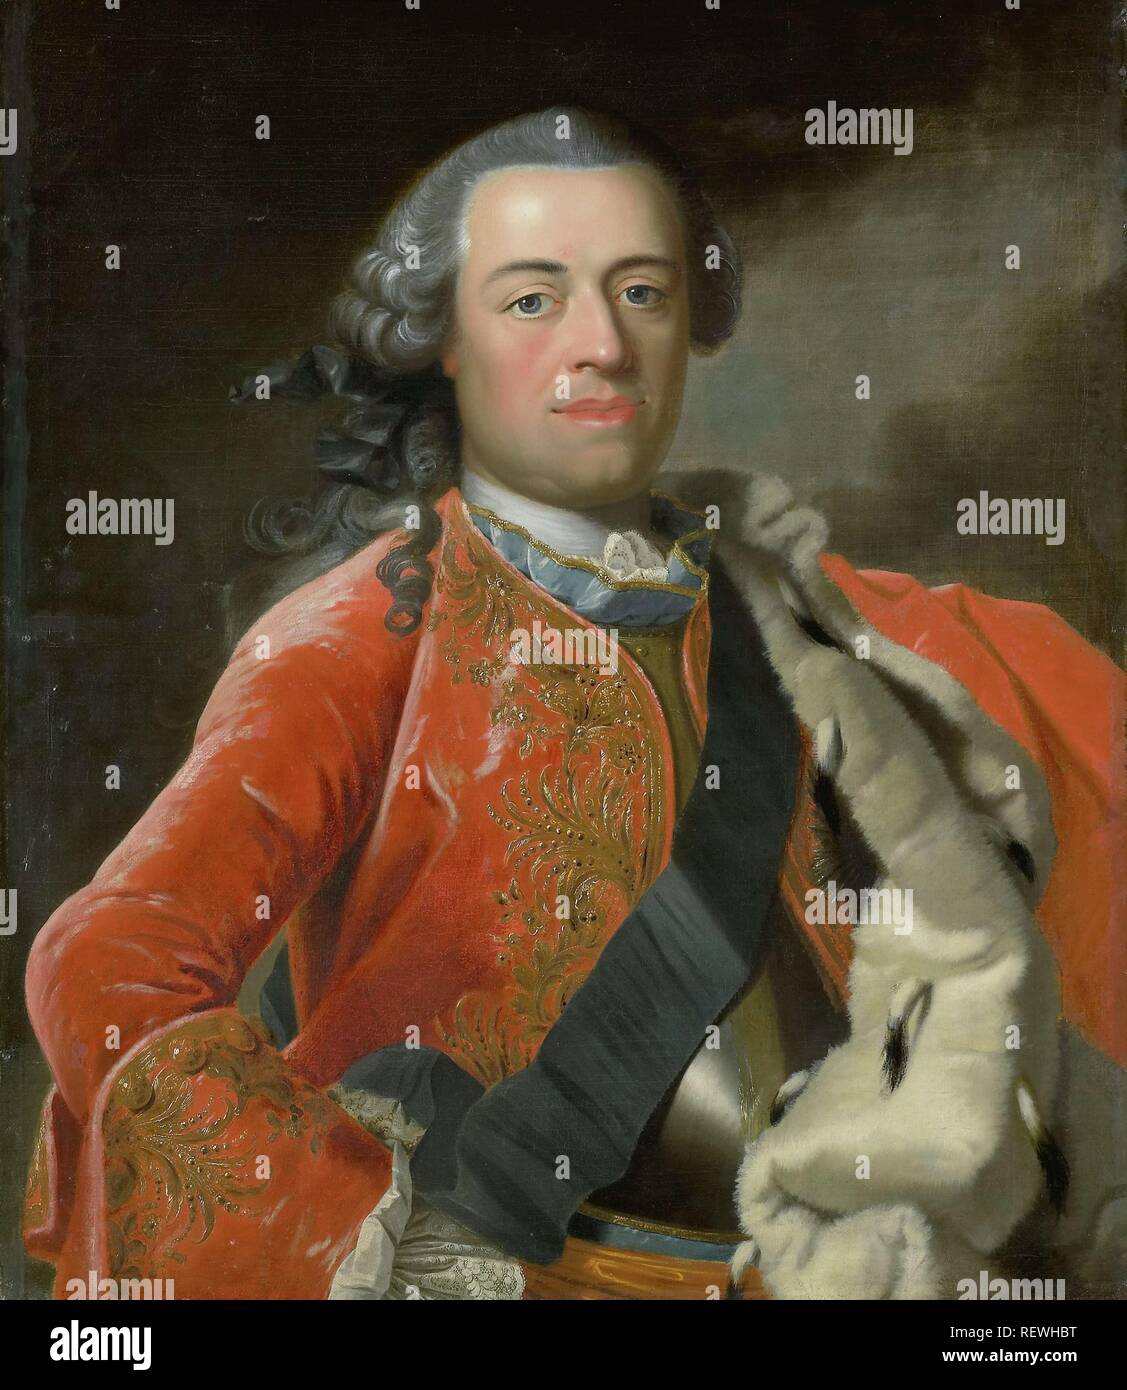 Portrait von Wilhelm IV., Fürst von Orange. Dating: C. 1750. Ort: Norden der Niederlande. Maße: H 82,5 cm x W 70,5 cm; d 13 cm. Museum: Rijksmuseum, Amsterdam. Thema: Frans van der Mijn (Namensnennung zurückgewiesen). Stockfoto